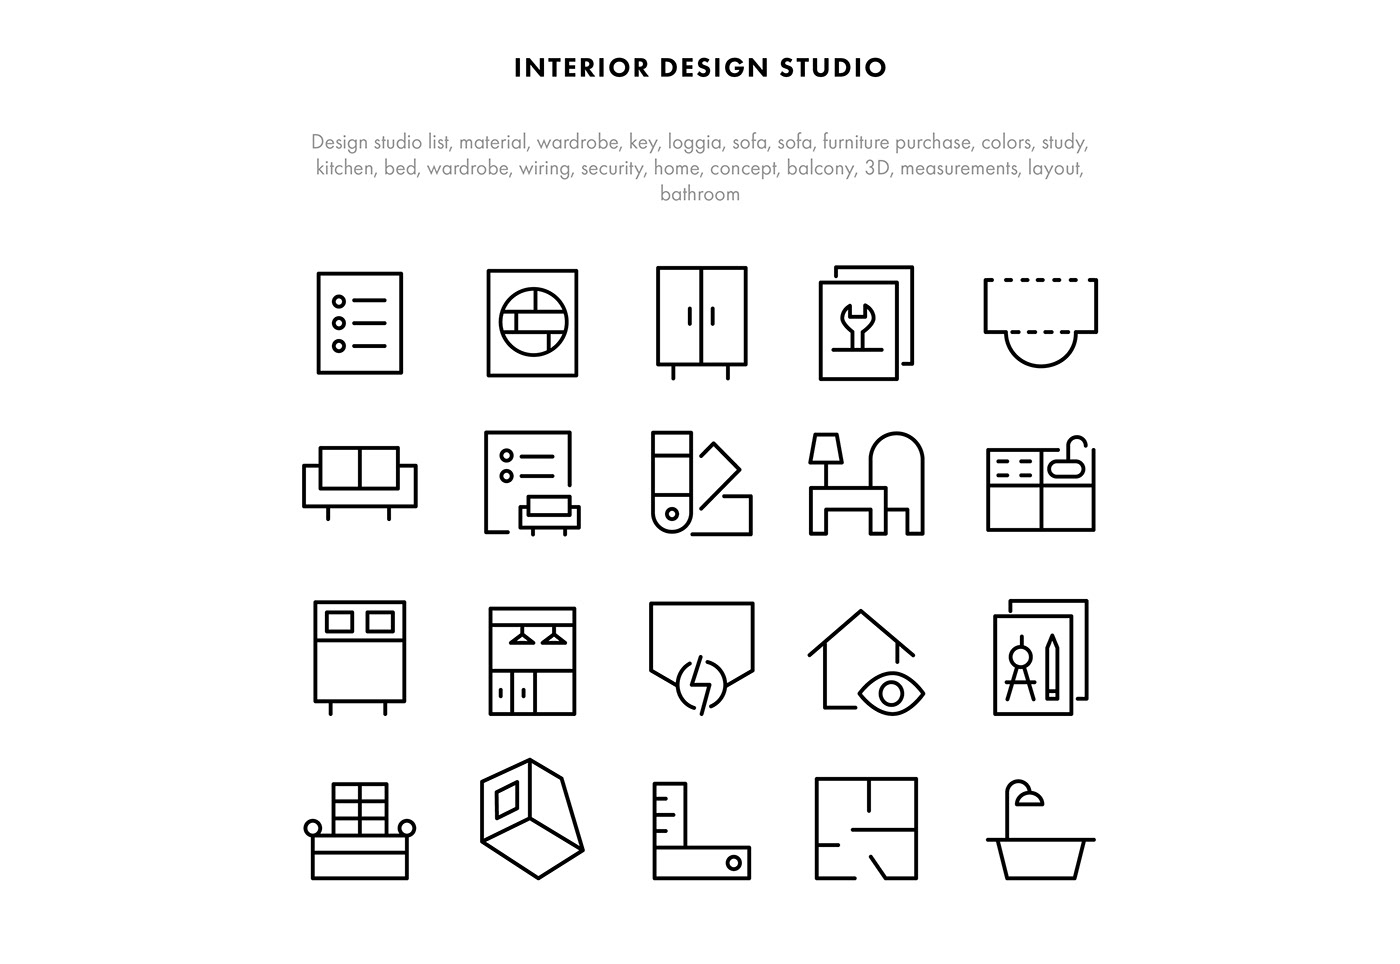 icons iconset webicons freeicons Iconsdesign Webdesign iconsets producthunt